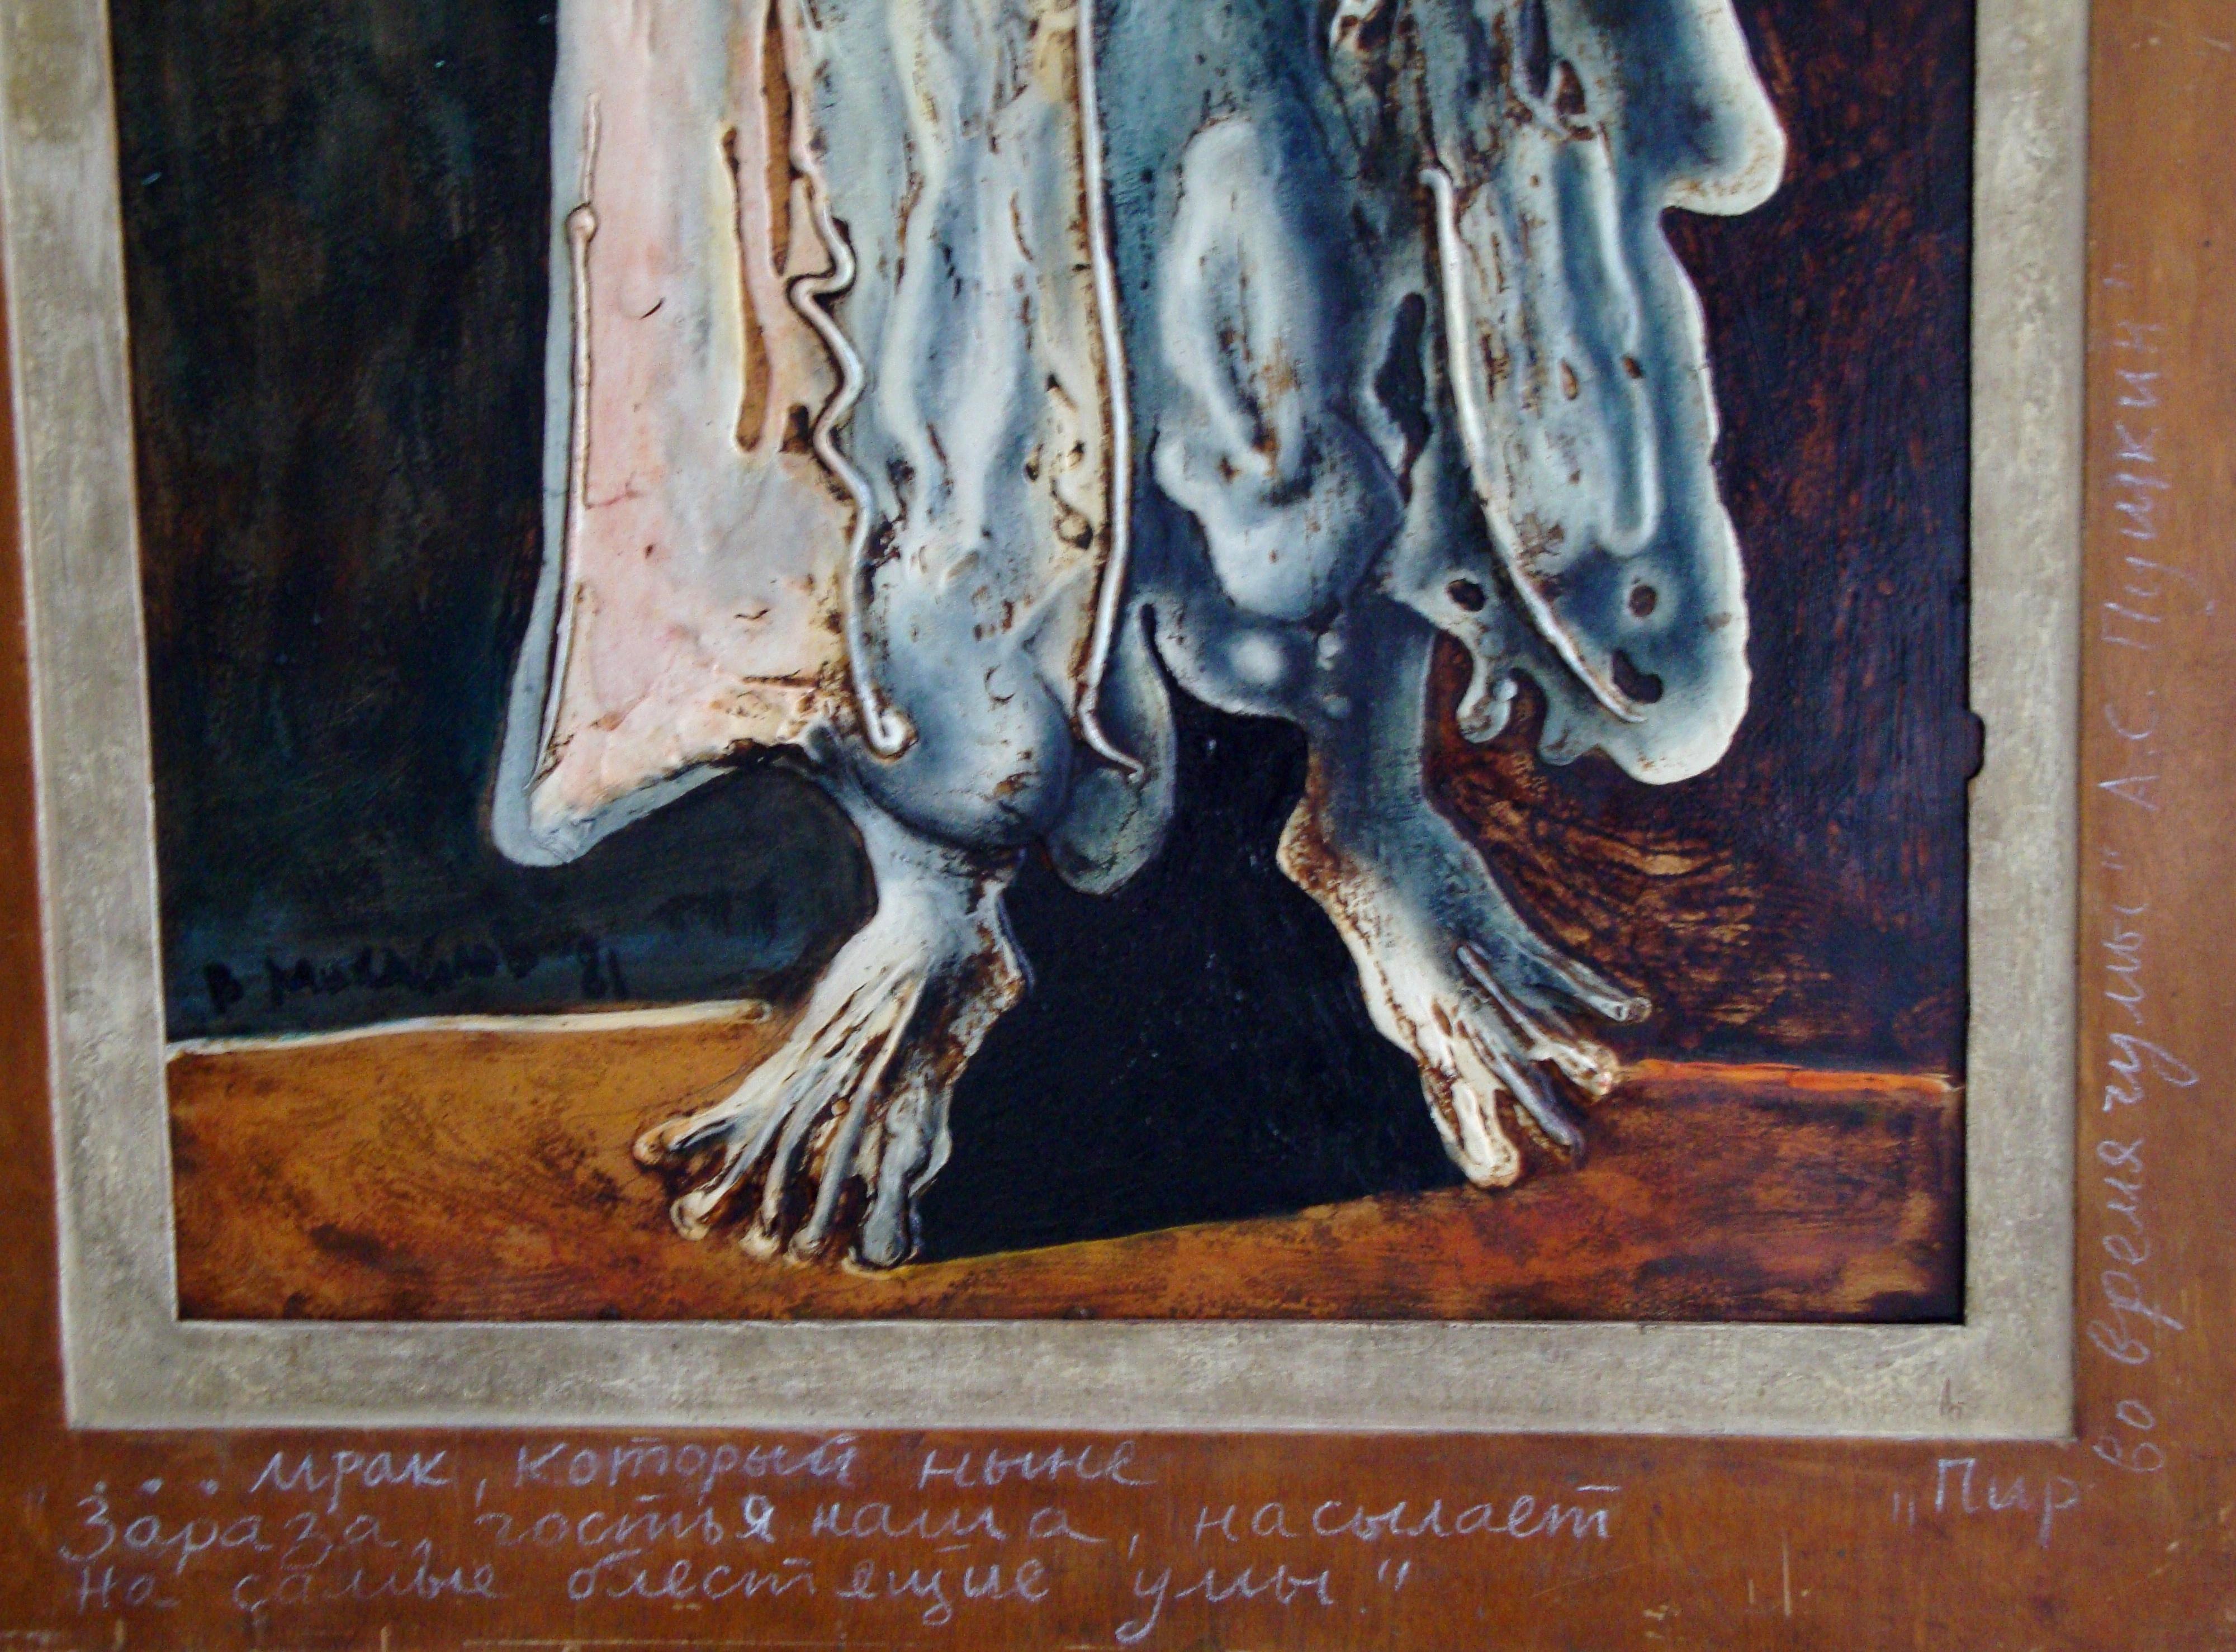 Guest. 1981, Autorentechnik auf Sperrholz, 89x54, 5 cm (Braun), Figurative Painting, von Mihailov Vyacheslav Sawich